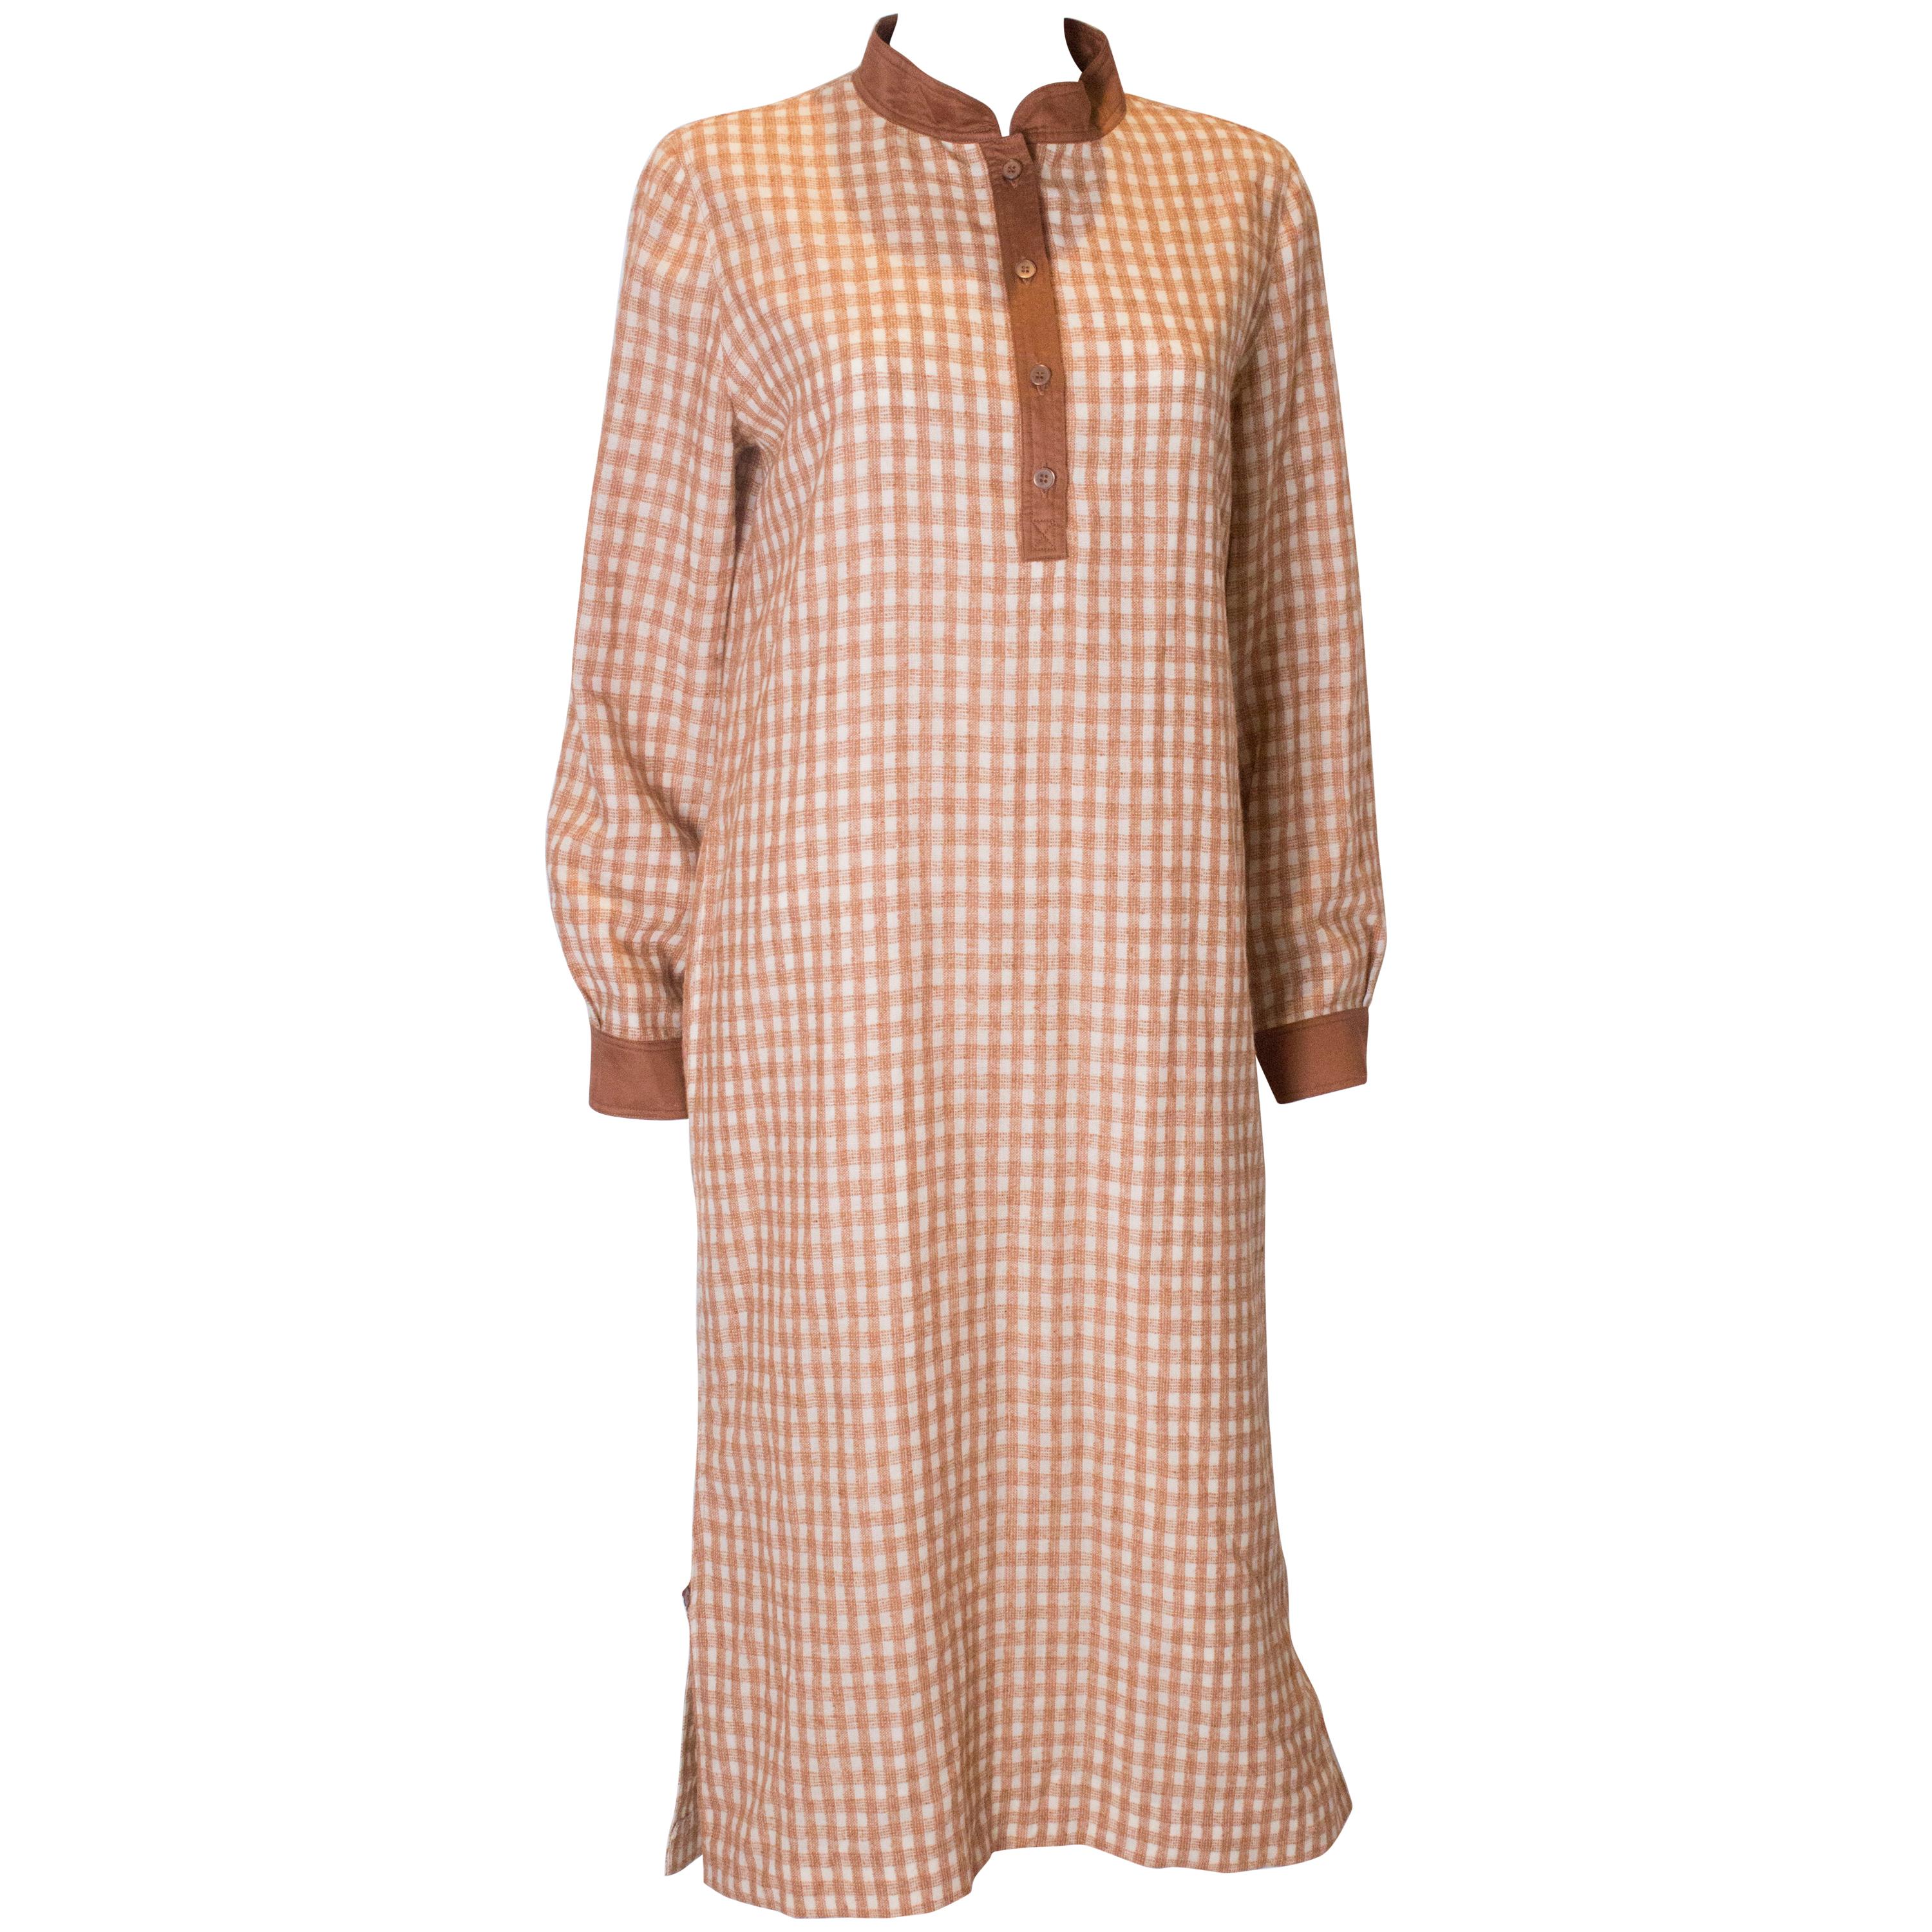 A Vintage 1980s courreges check autumnal Shirt Dress For Sale